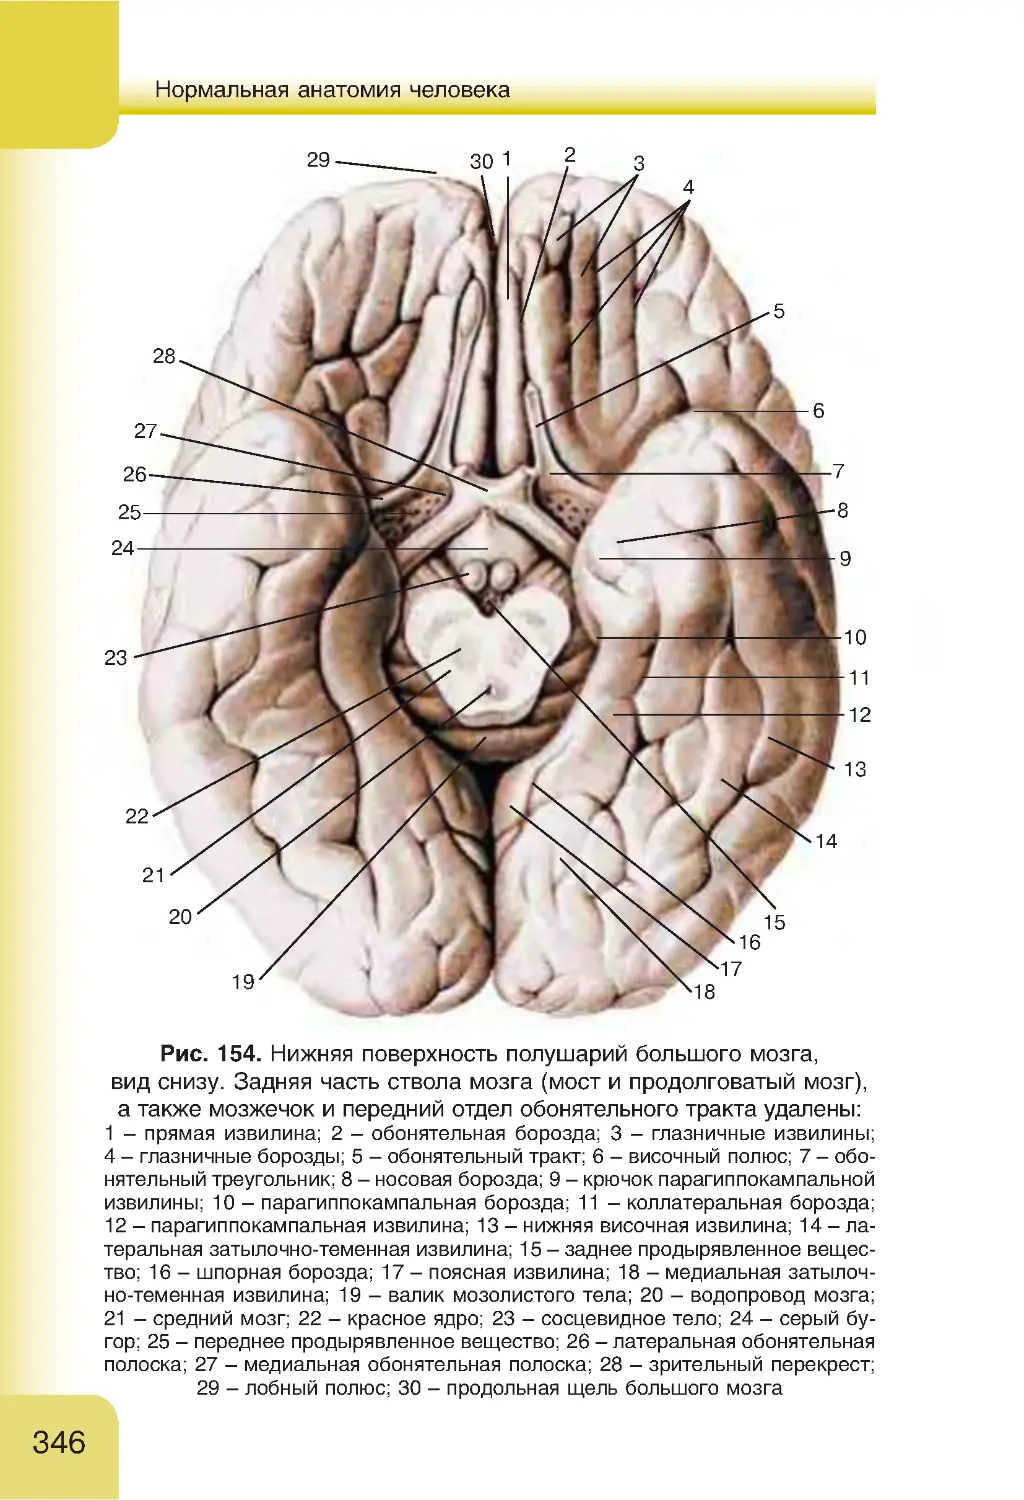 Нижнее полушарие мозга. Борозды и извилины головного мозга анатомия. Борозды и извилины нижней поверхности полушария. Борозды и извилины нижней поверхности полушария большого мозга. Нижняя поверхность конечного мозга анатомия.